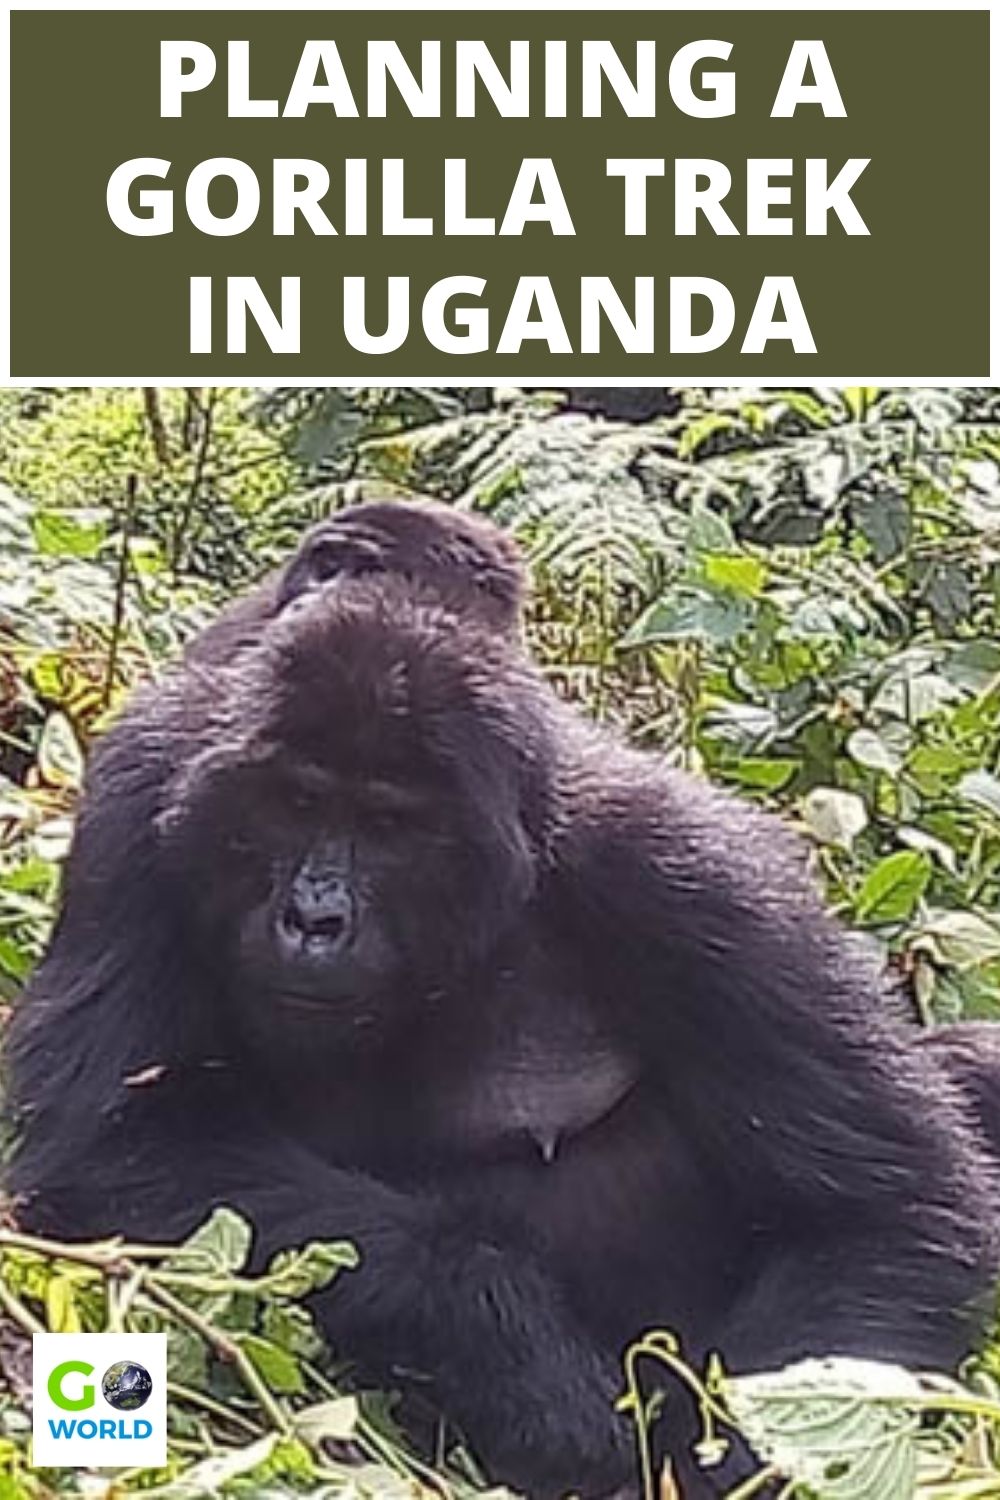 Semua yang perlu Anda ketahui tentang merencanakan pengalaman trekking gorila di Uganda.  Kapan harus pergi, bagaimana cara memesan dan berapa lama untuk mengizinkan.  #gorillatrekking #ugandagorillatrek